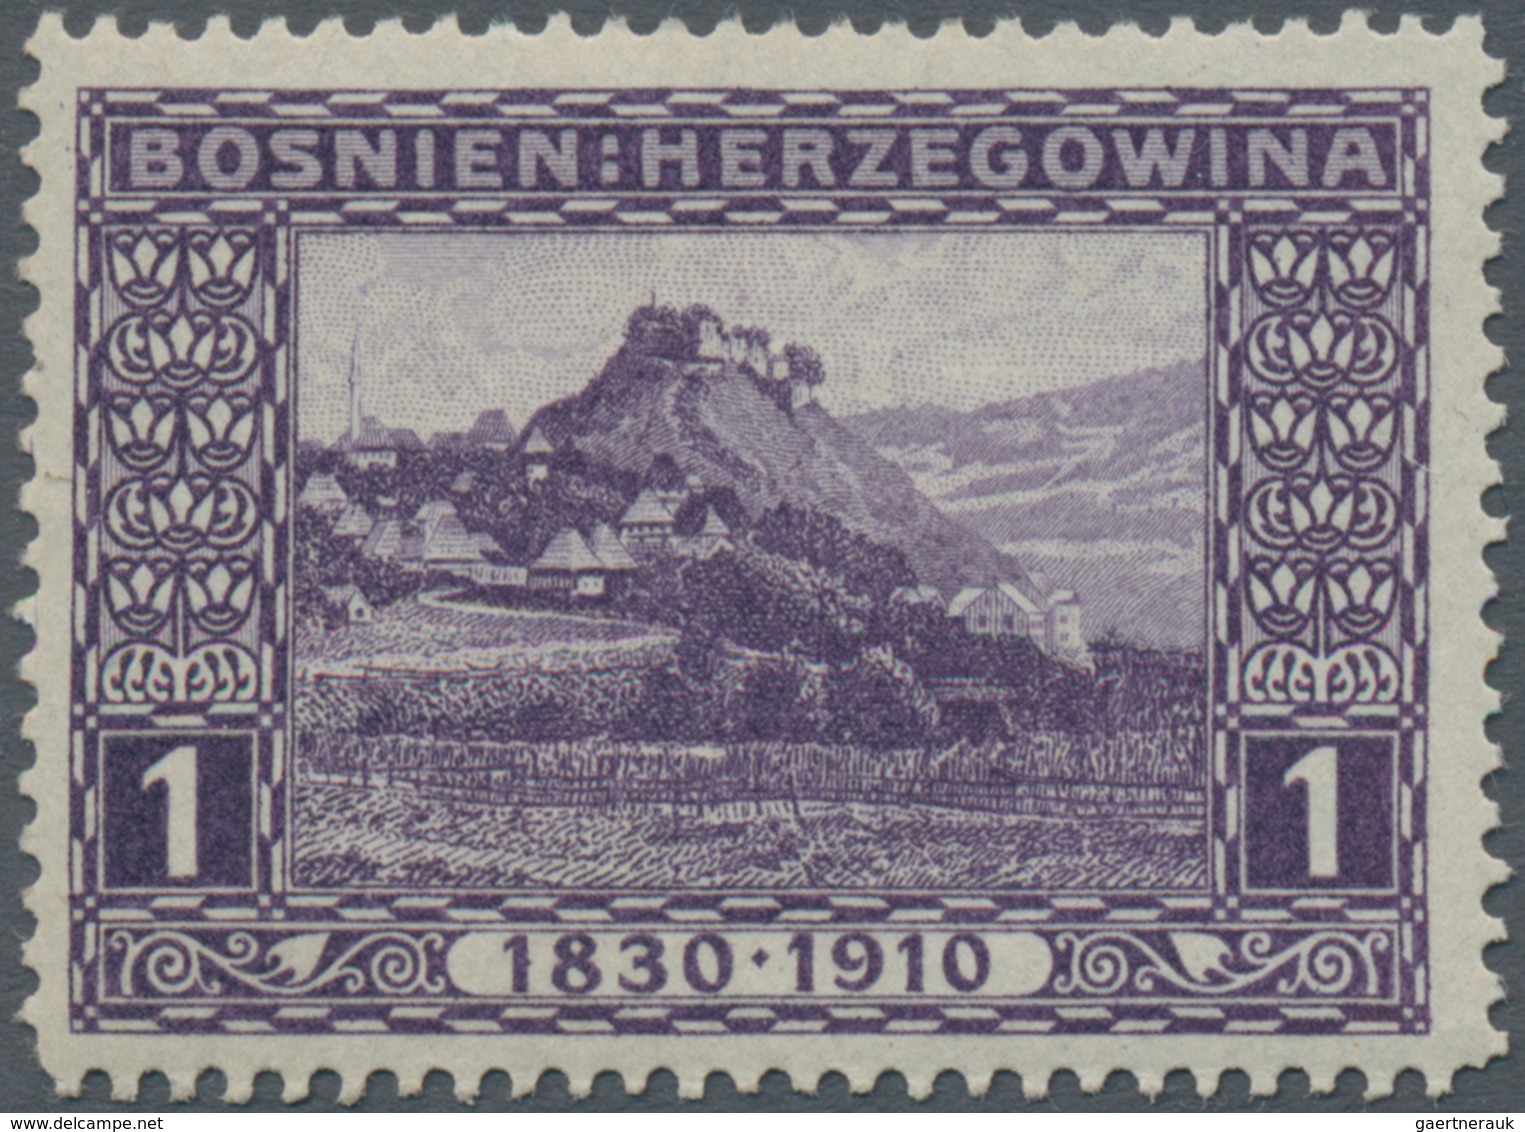 Bosnien und Herzegowina (Österreich 1879/1918): 1910, "80. Geburtstag Franz Joseph" alle 80(!) versc